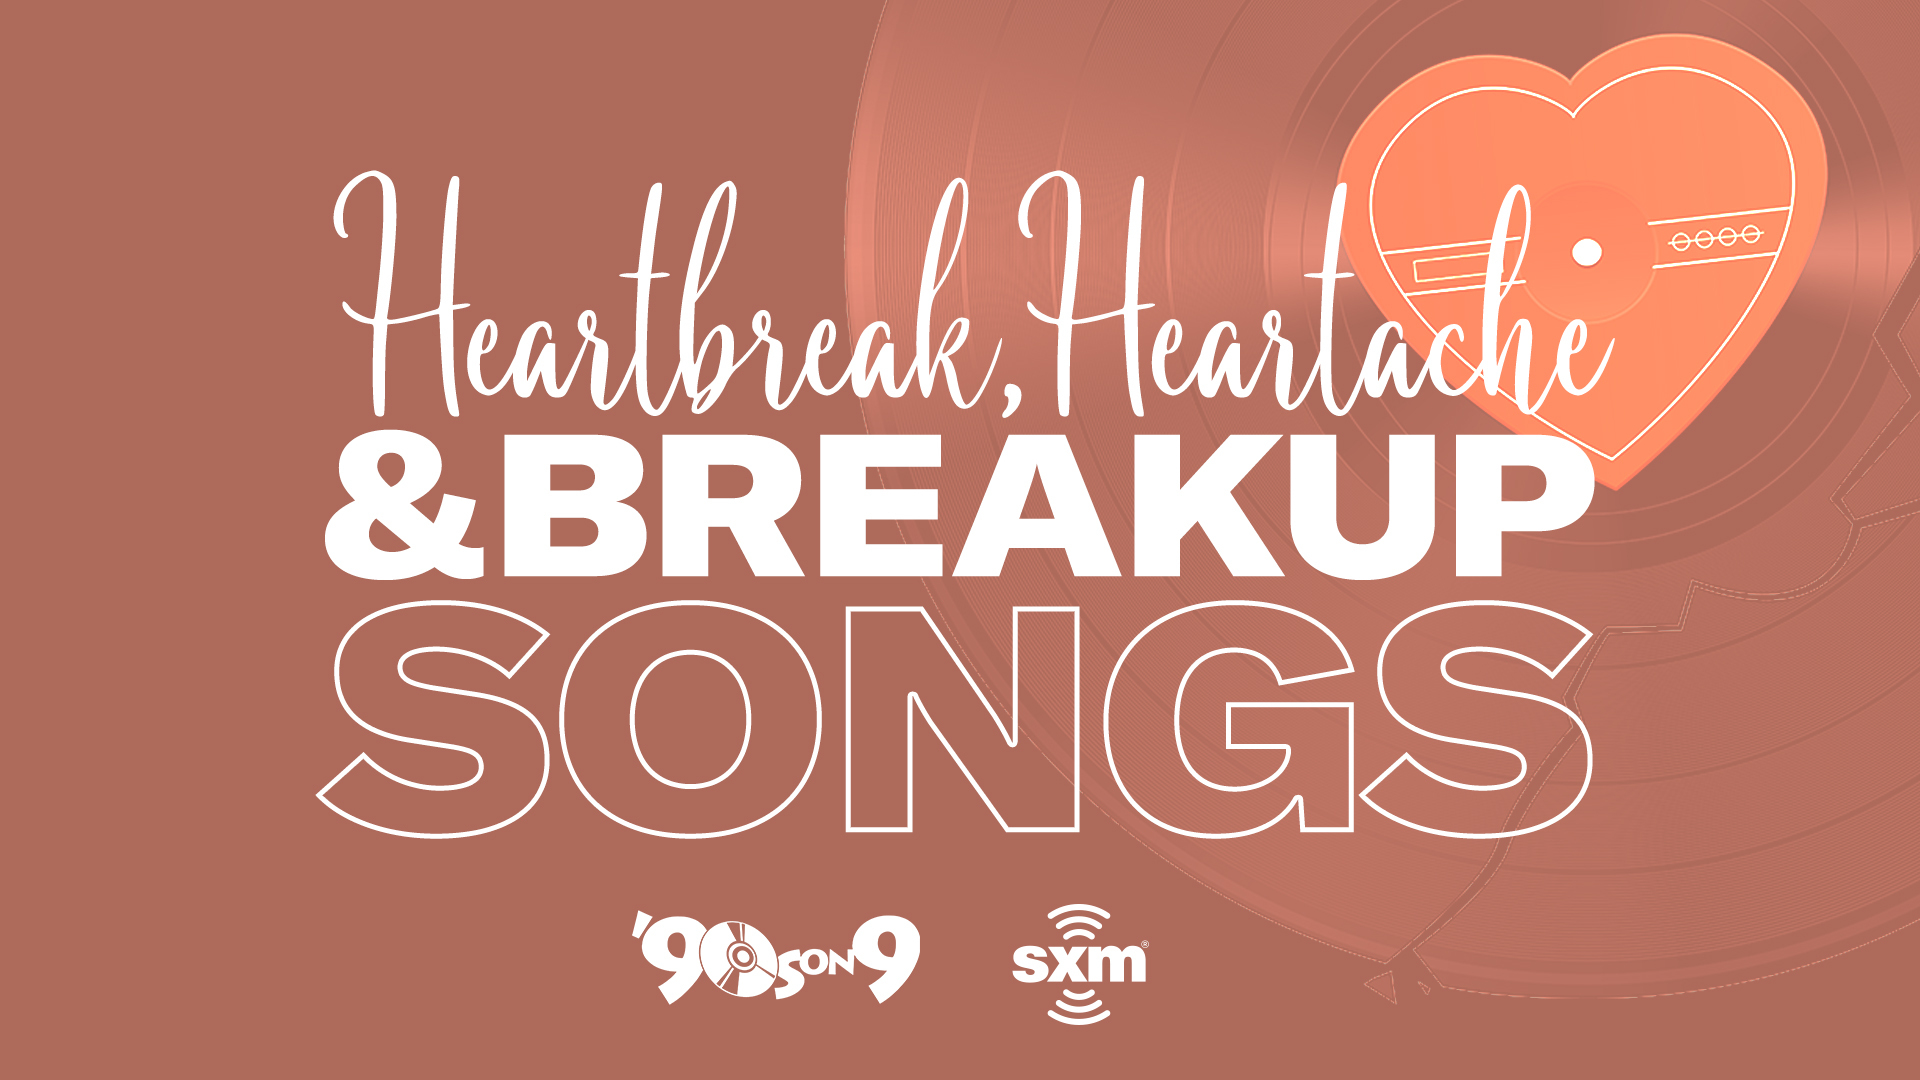 SiriusXM 90s on 9 Valentine's Day Heartbreak Heartache Breakup Songs